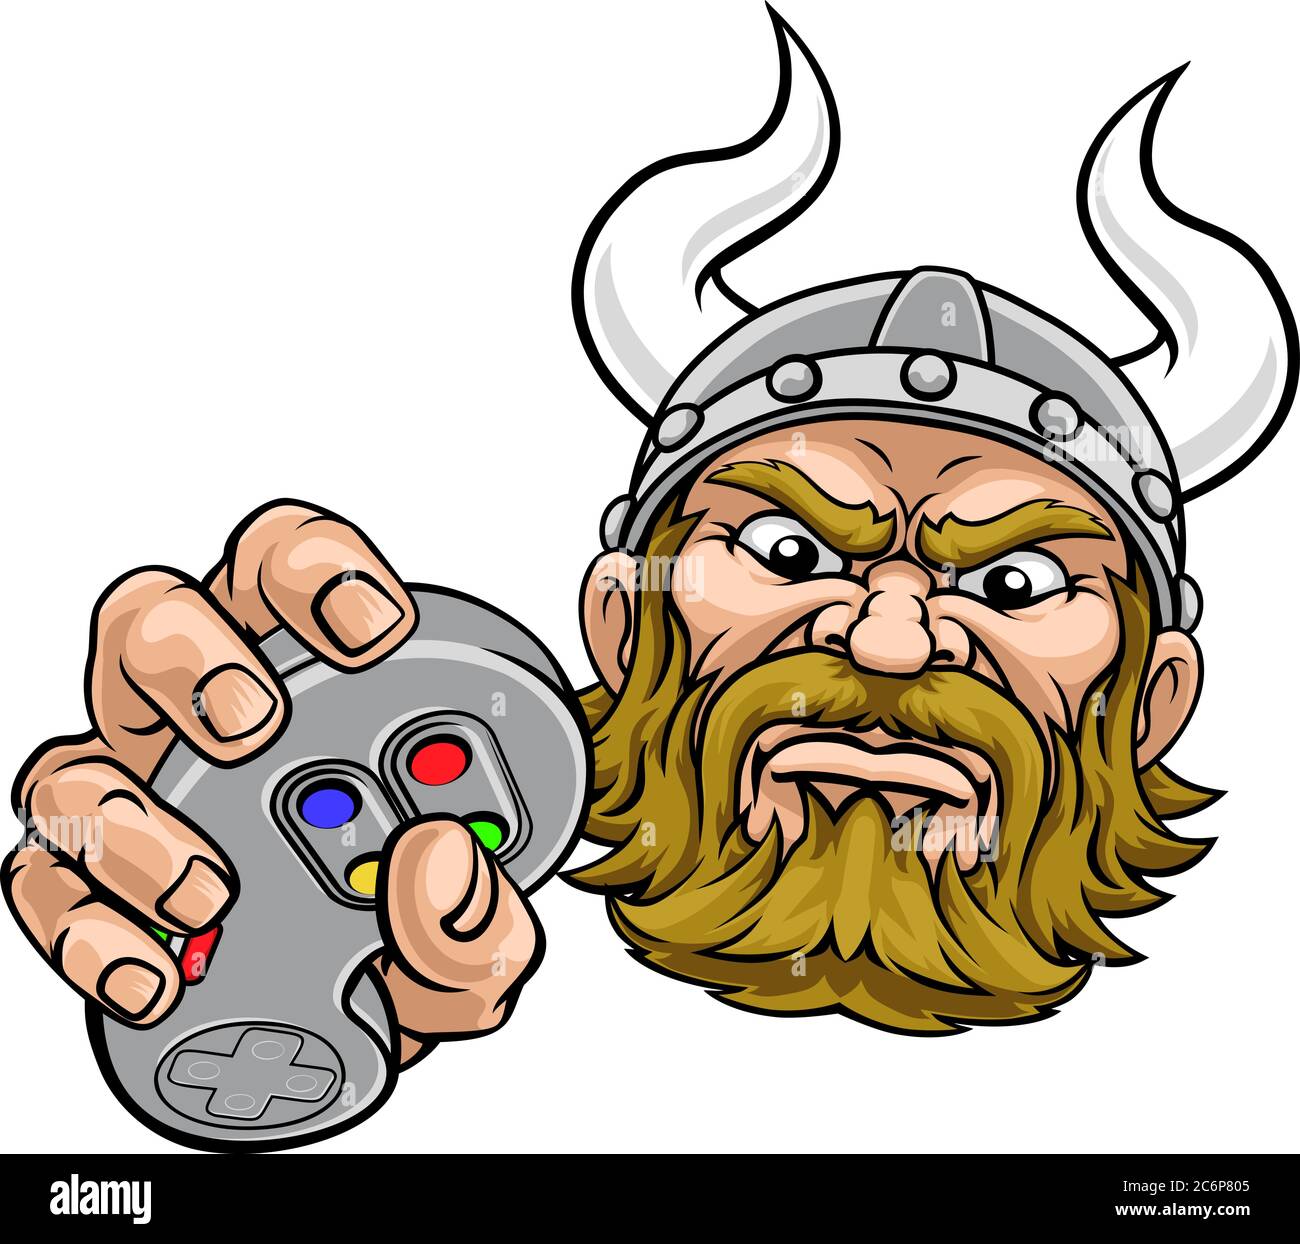 Viking Gamer manette de jeu vidéo, dessin animé Illustration de Vecteur